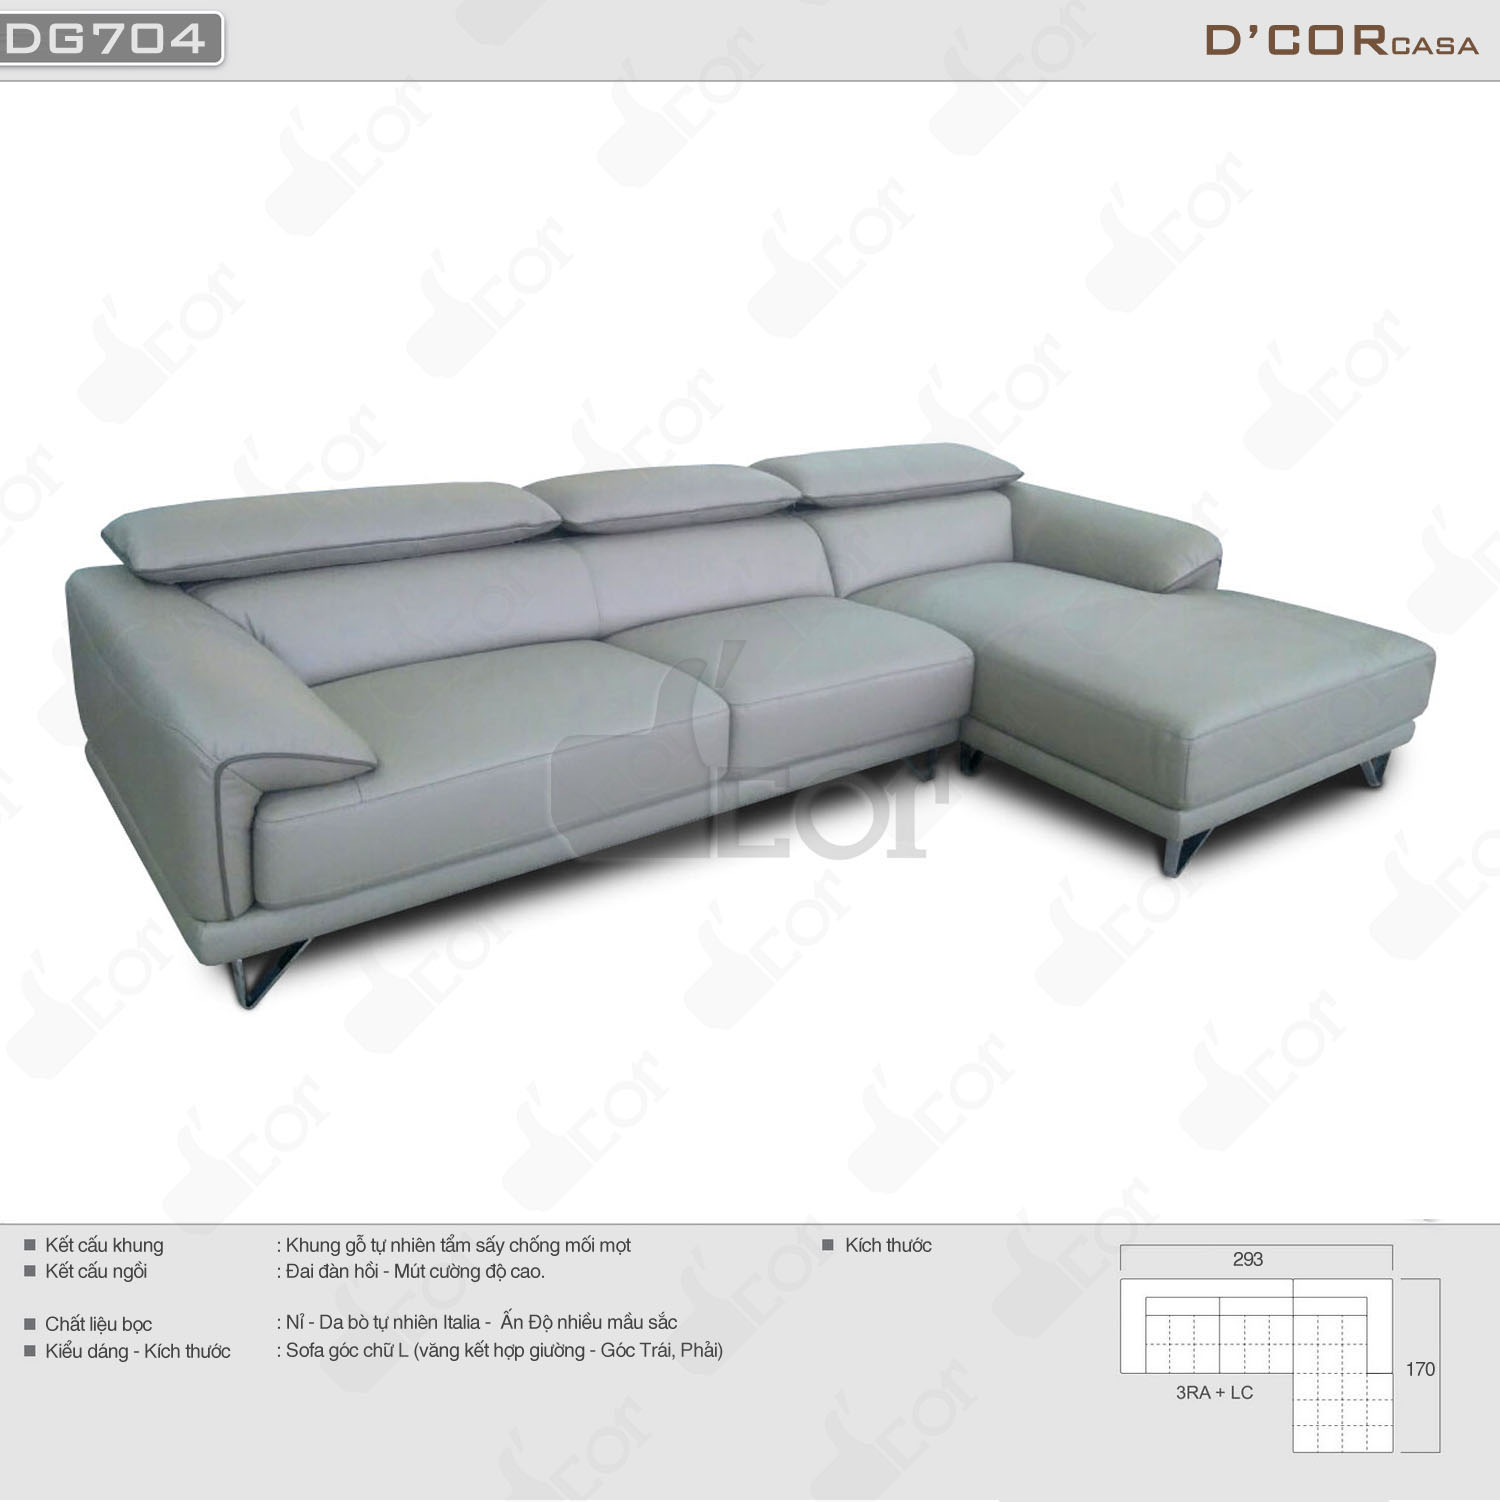 Ngất ngây với mẫu sofa da phòng khách cao cấp Malaysia DG704 sang chảnh